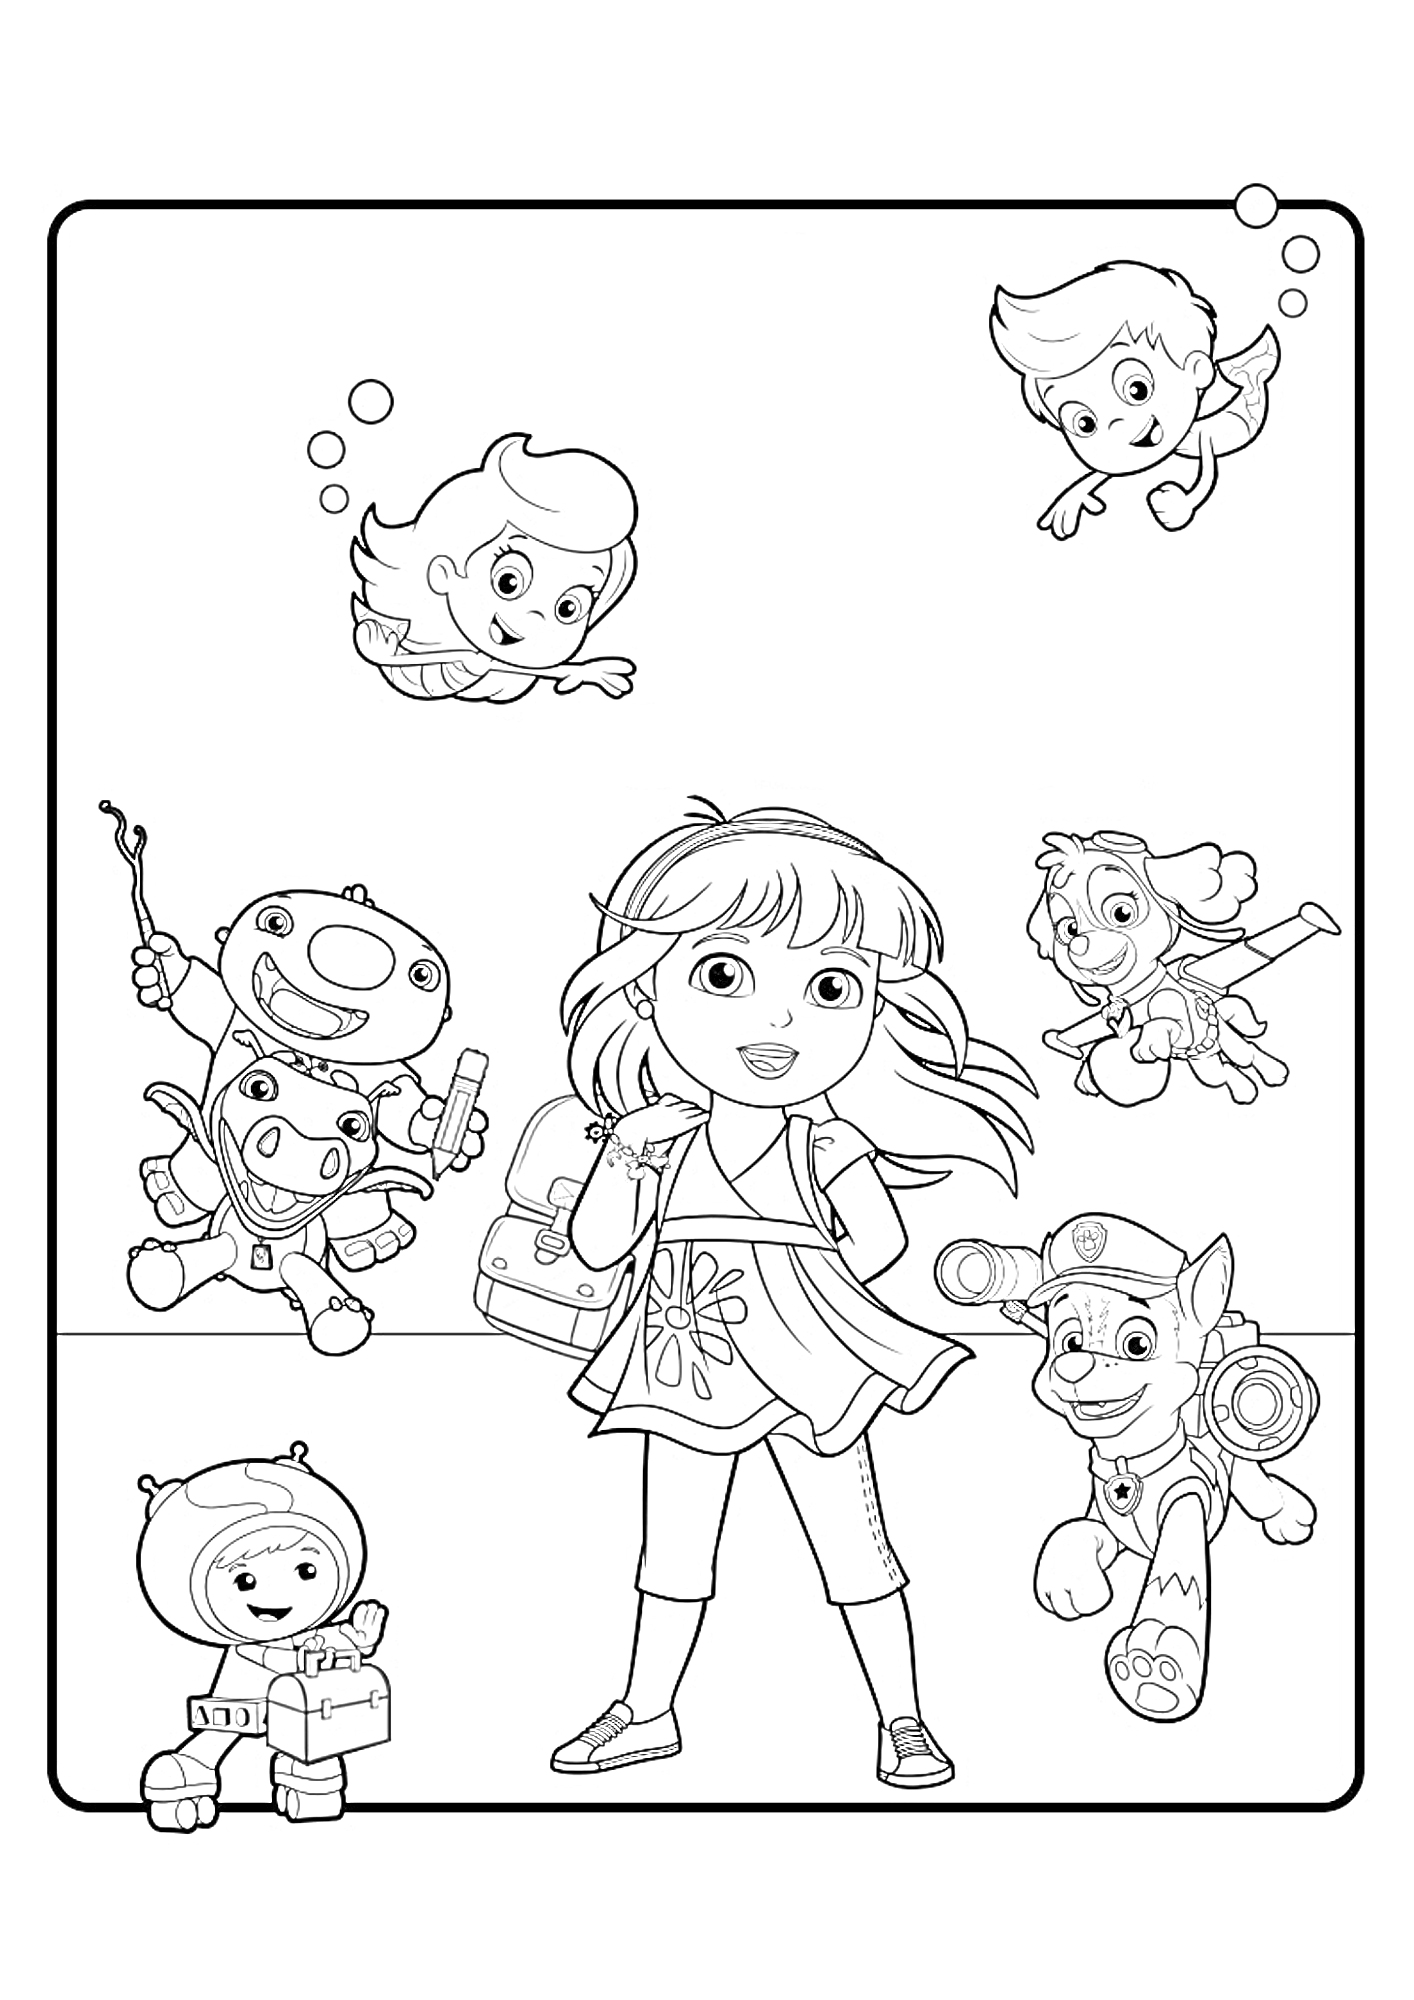 Раскраска Даша с рюкзаком и друзьями - мальчик с подводной маской, девочка с подводной маской, робот с палочкой, щенок в шлеме, дитя в скафандре, и девочка с крыльями.